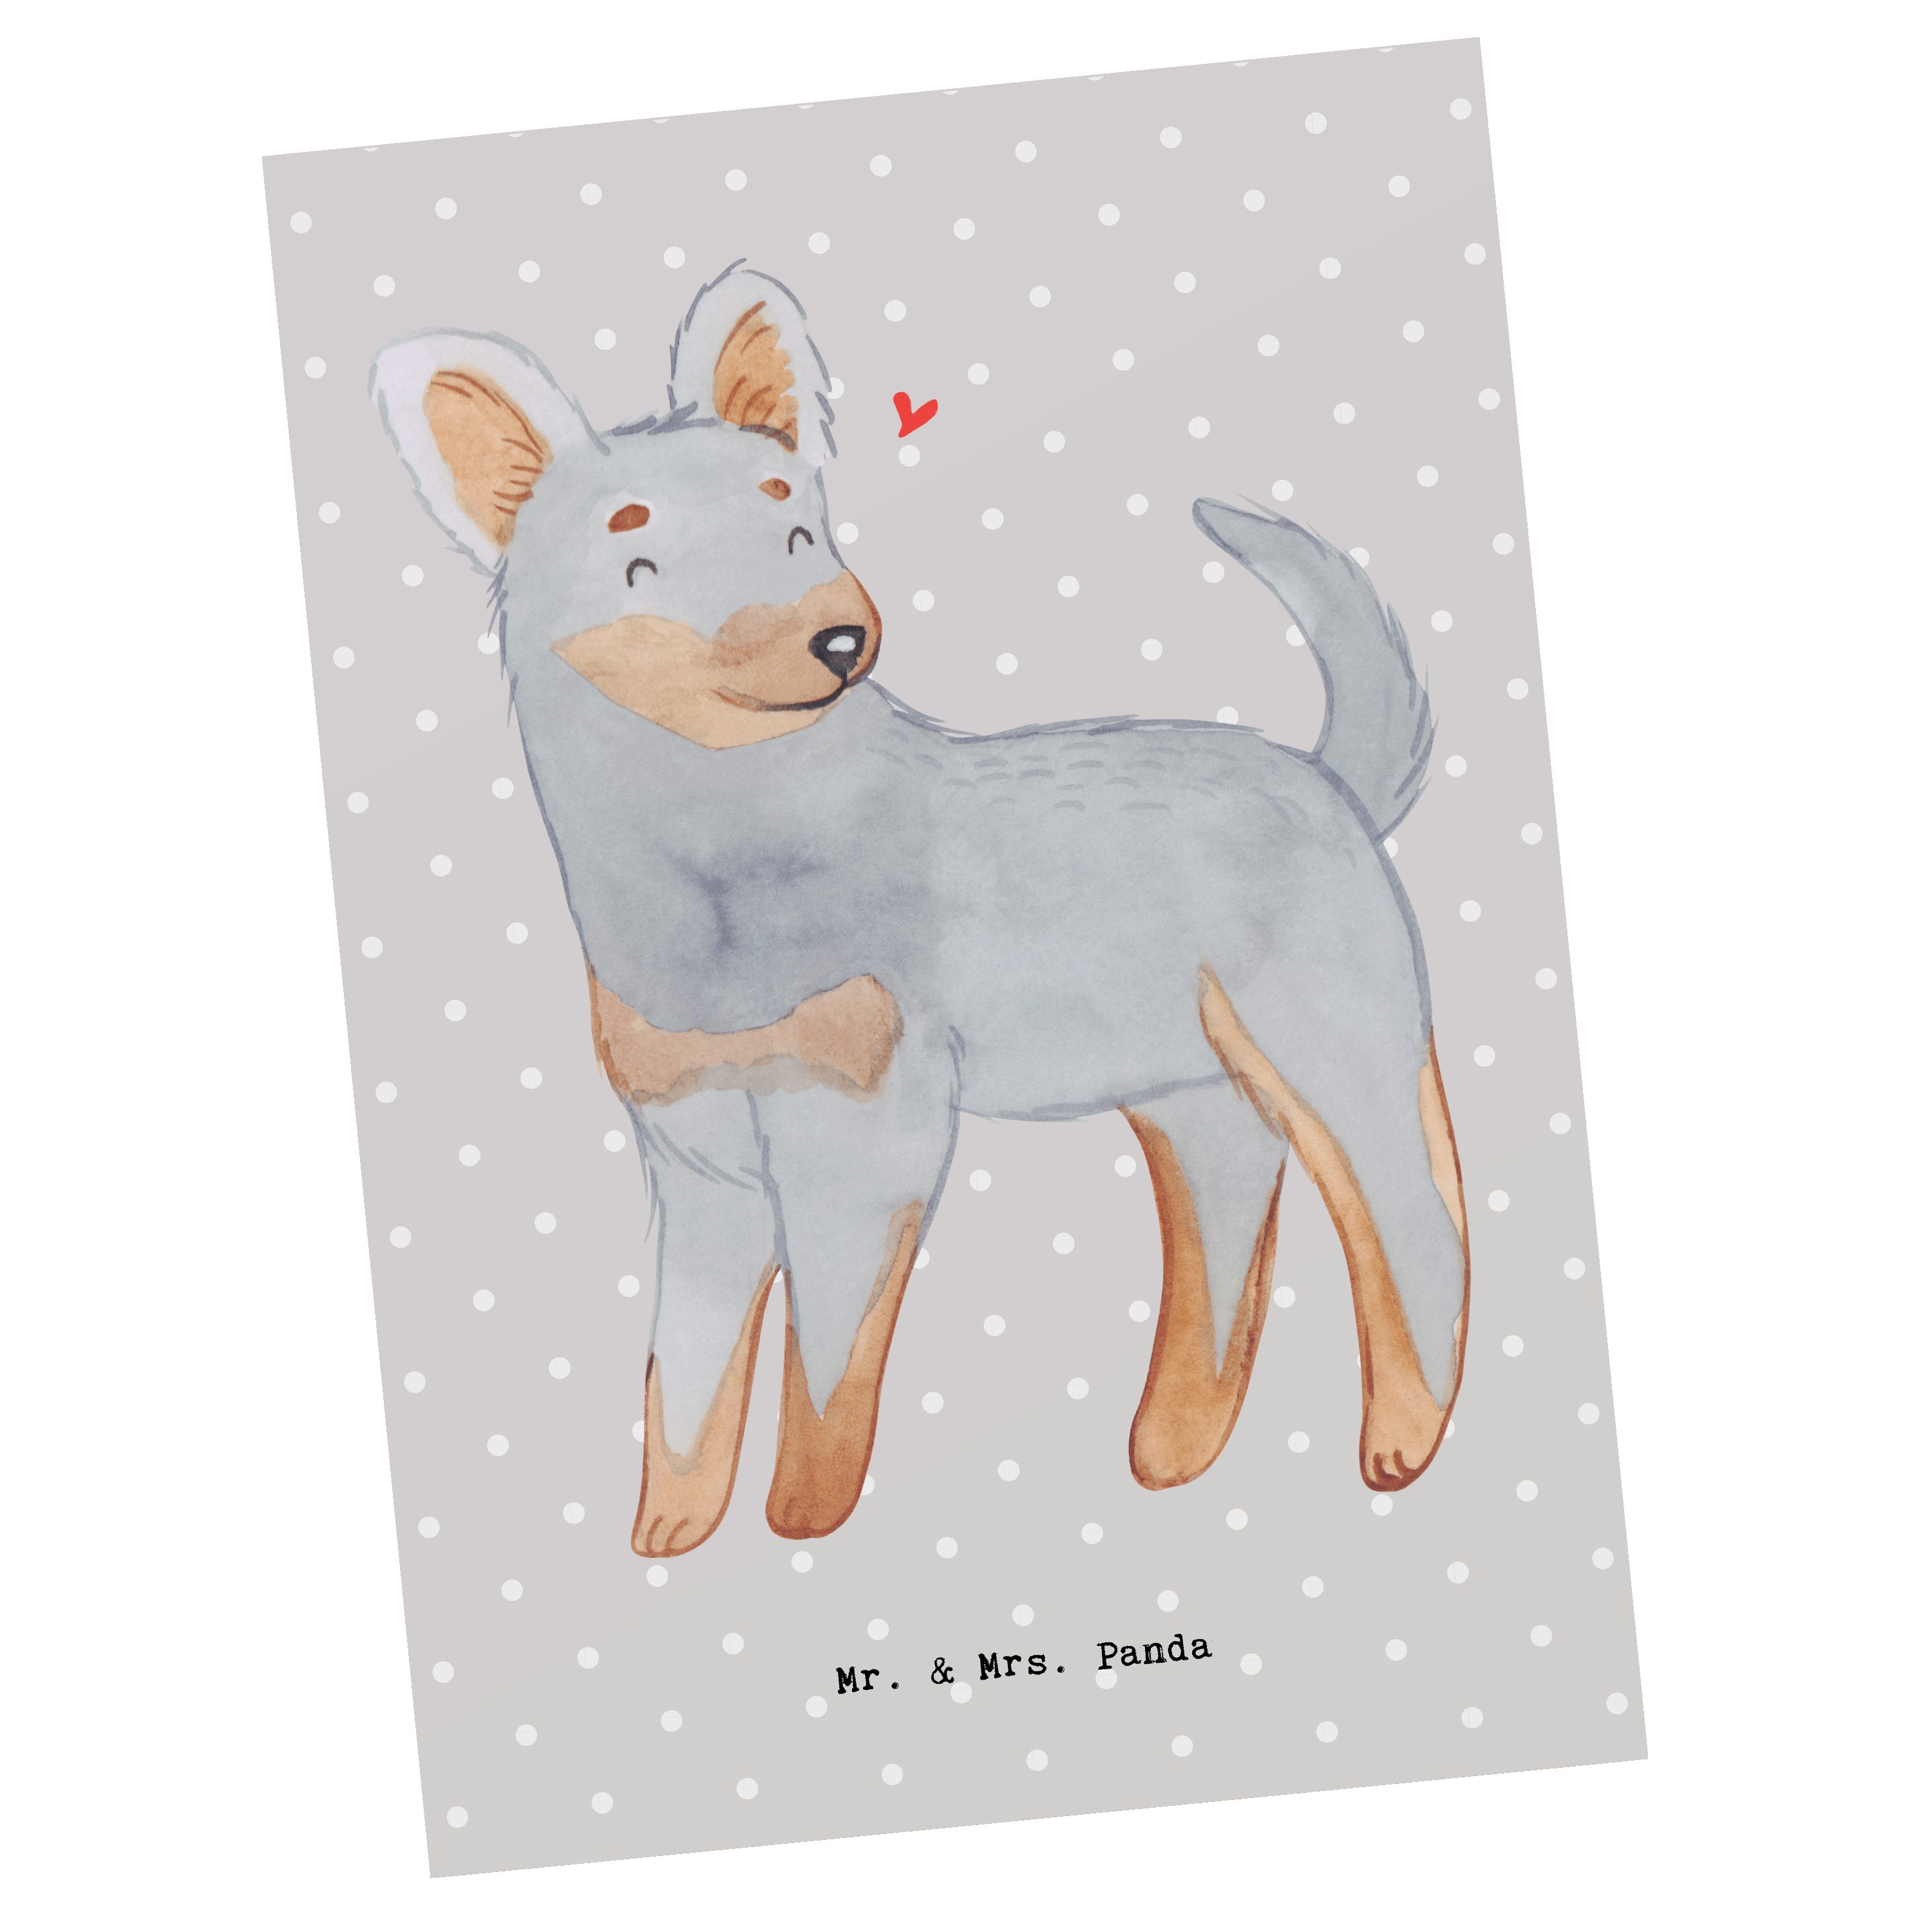 Mr. & Mrs. Panda Postkarte Prager Rattler Moment - Grau Pastell - Geschenk, Grußkarte, Hunderass